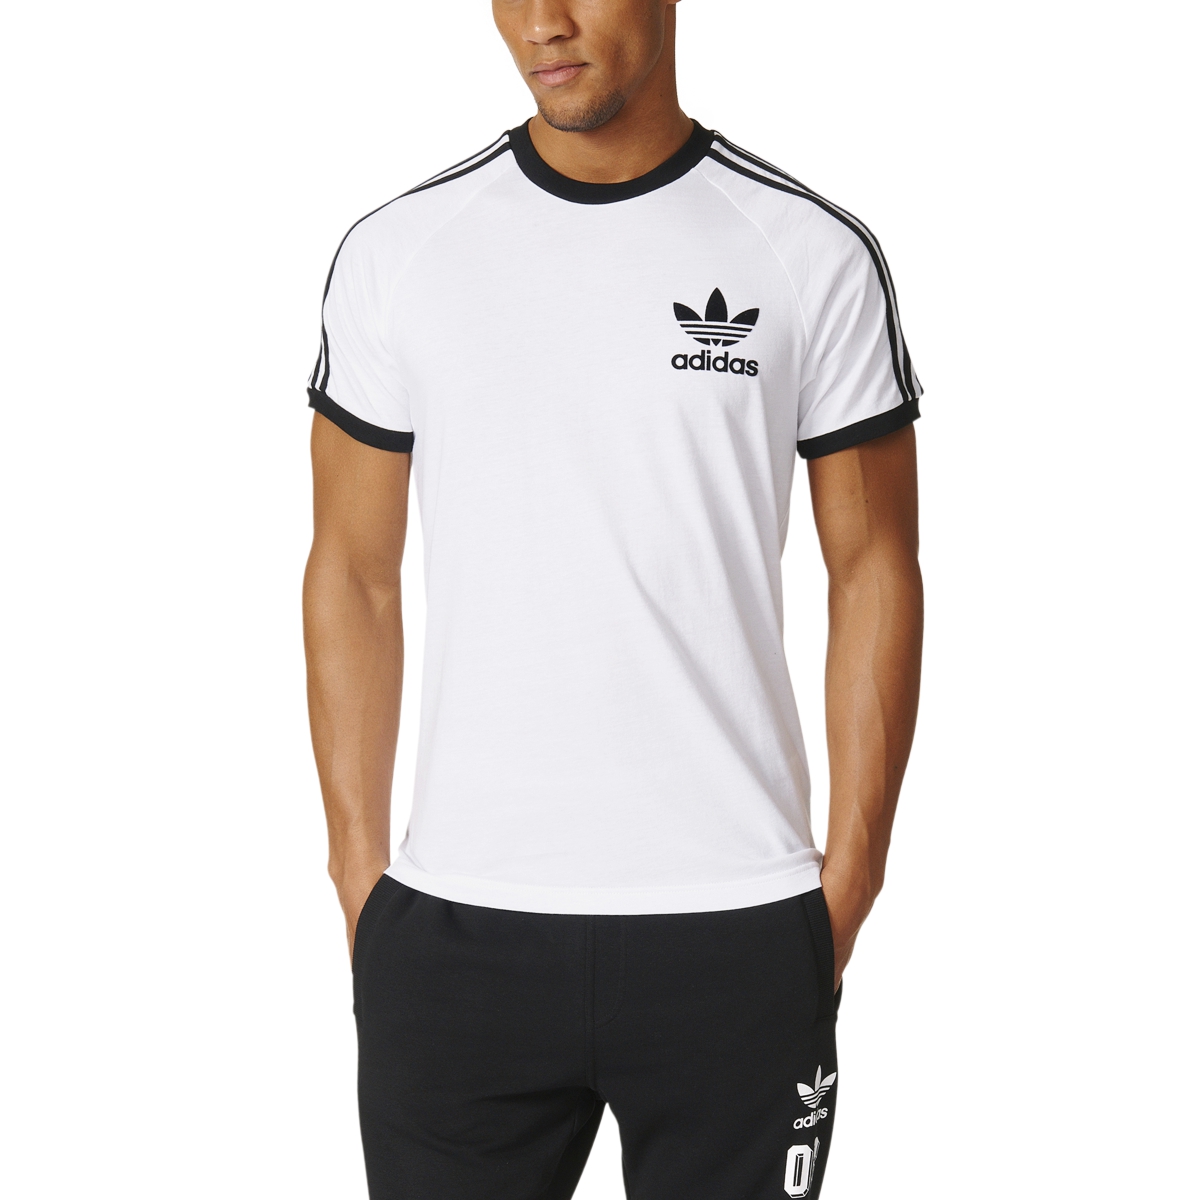 Adidas Originals Калифорнии короткий рукав мужская футболка белый/черный  az8128 | eBay